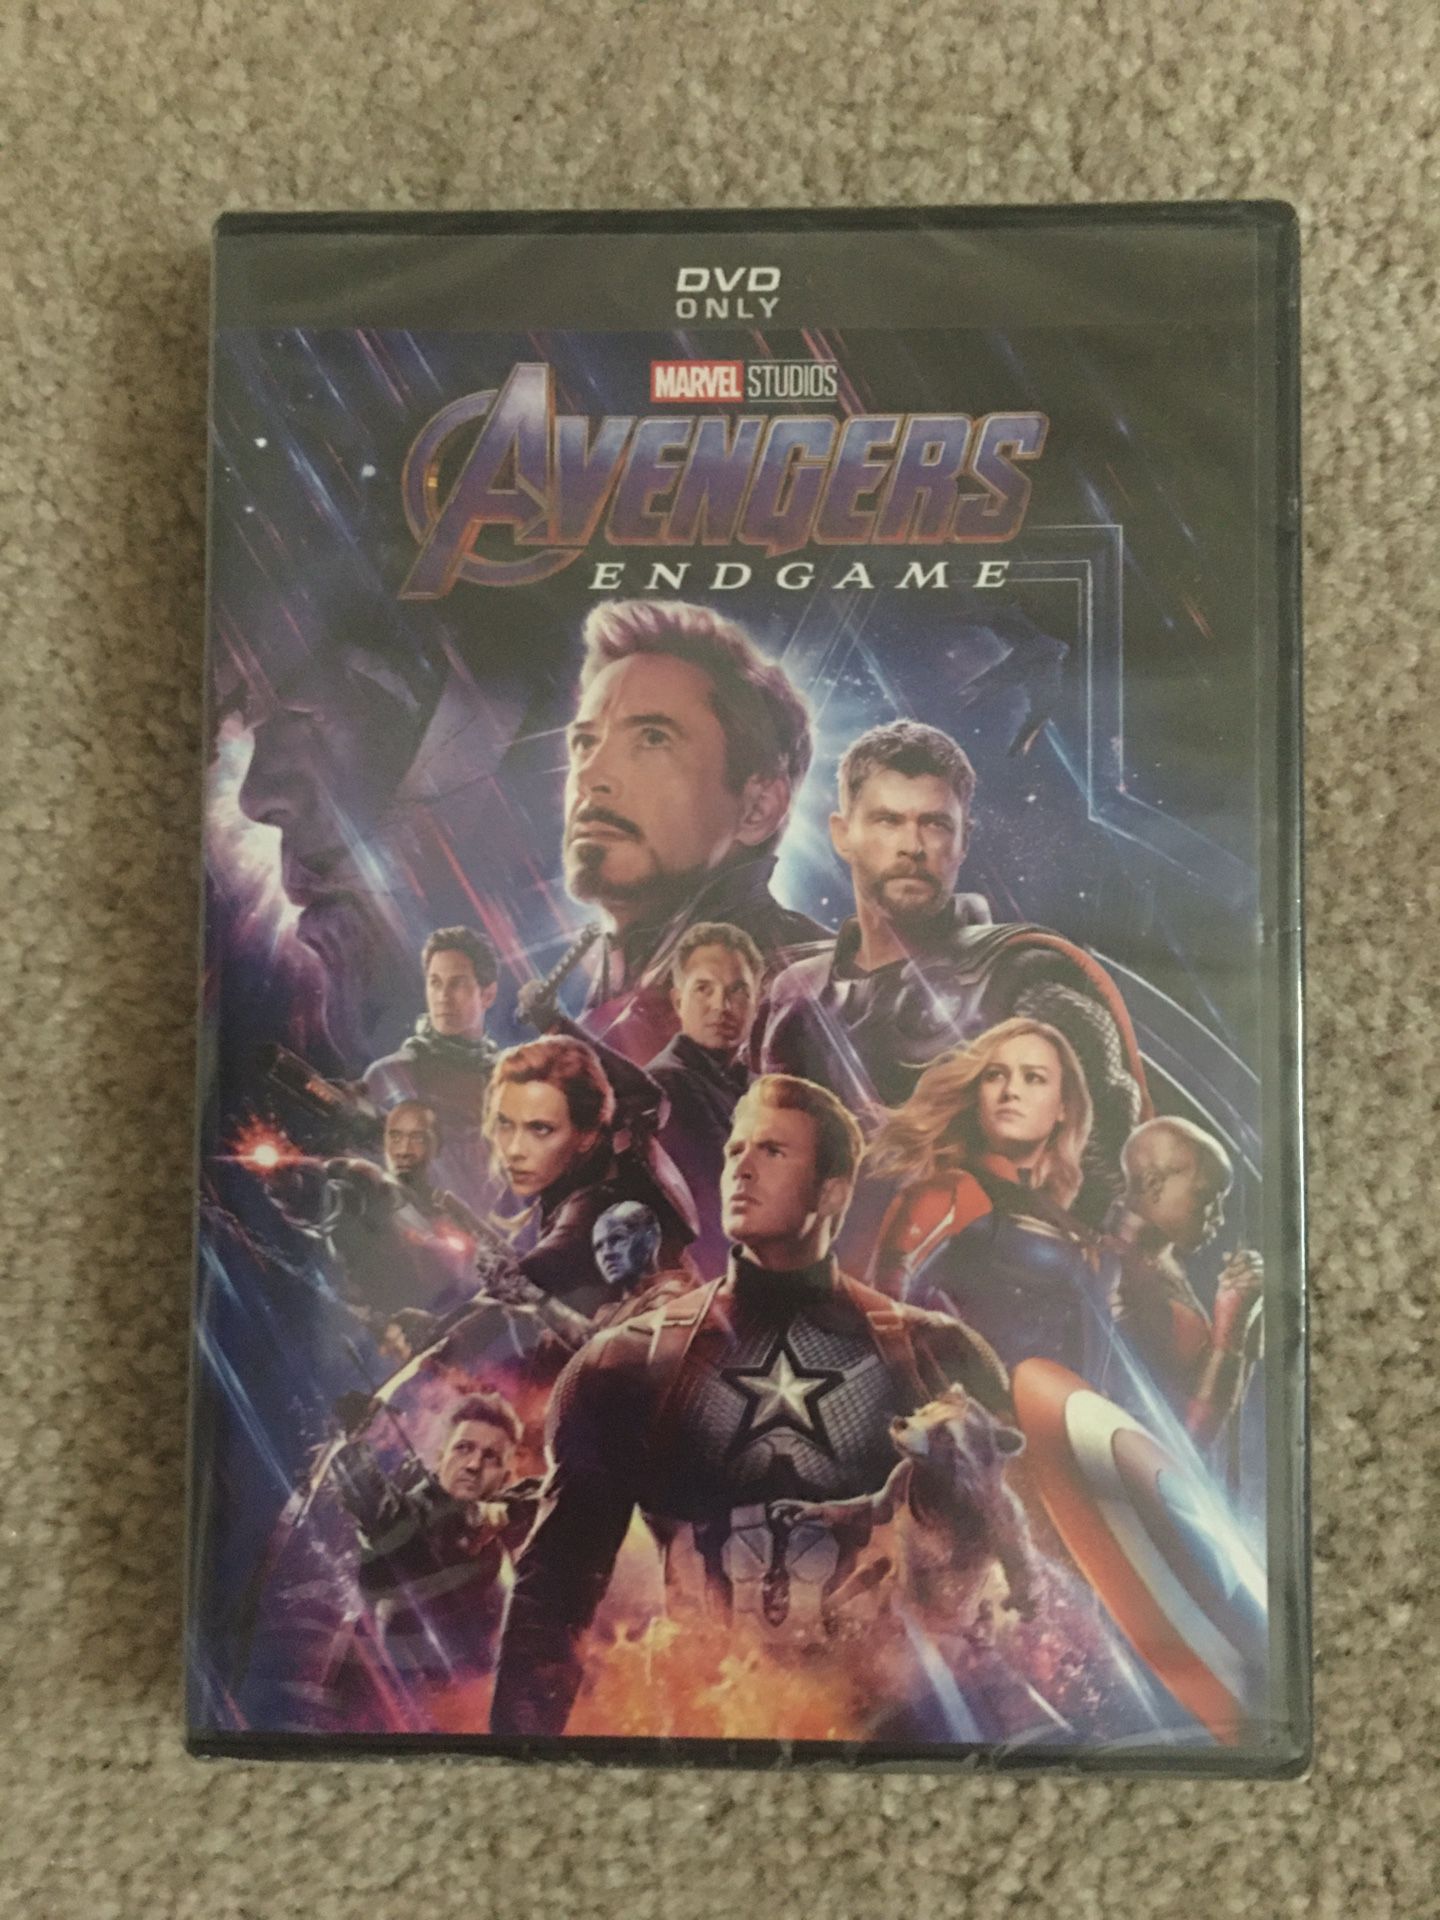 Brand new Avengers Endgame DVD $5